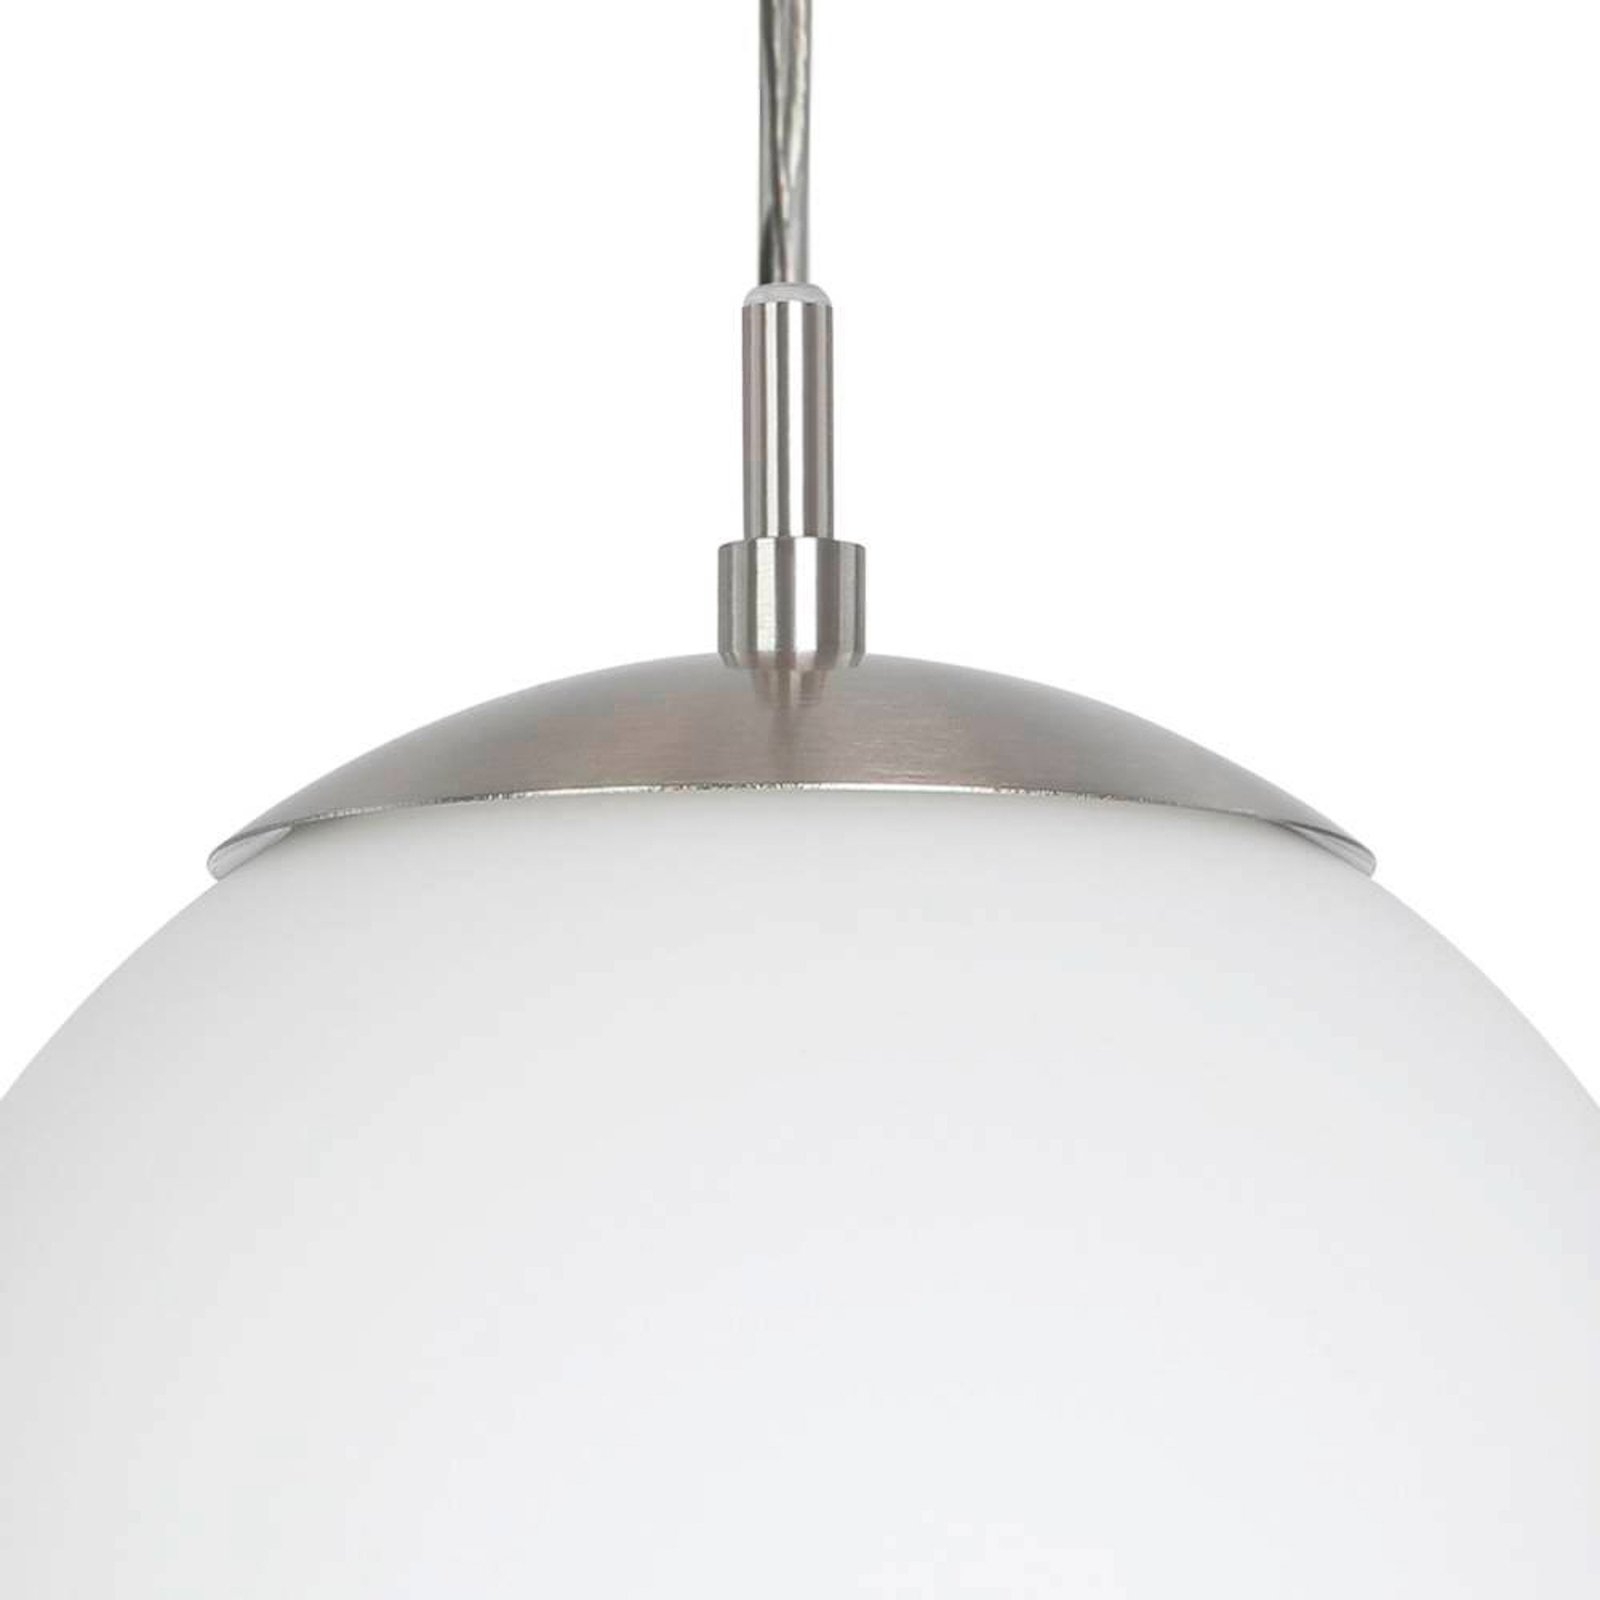 EGLO Rondo-riippuvalo, 3 lamppua nikkeli/valkoinen